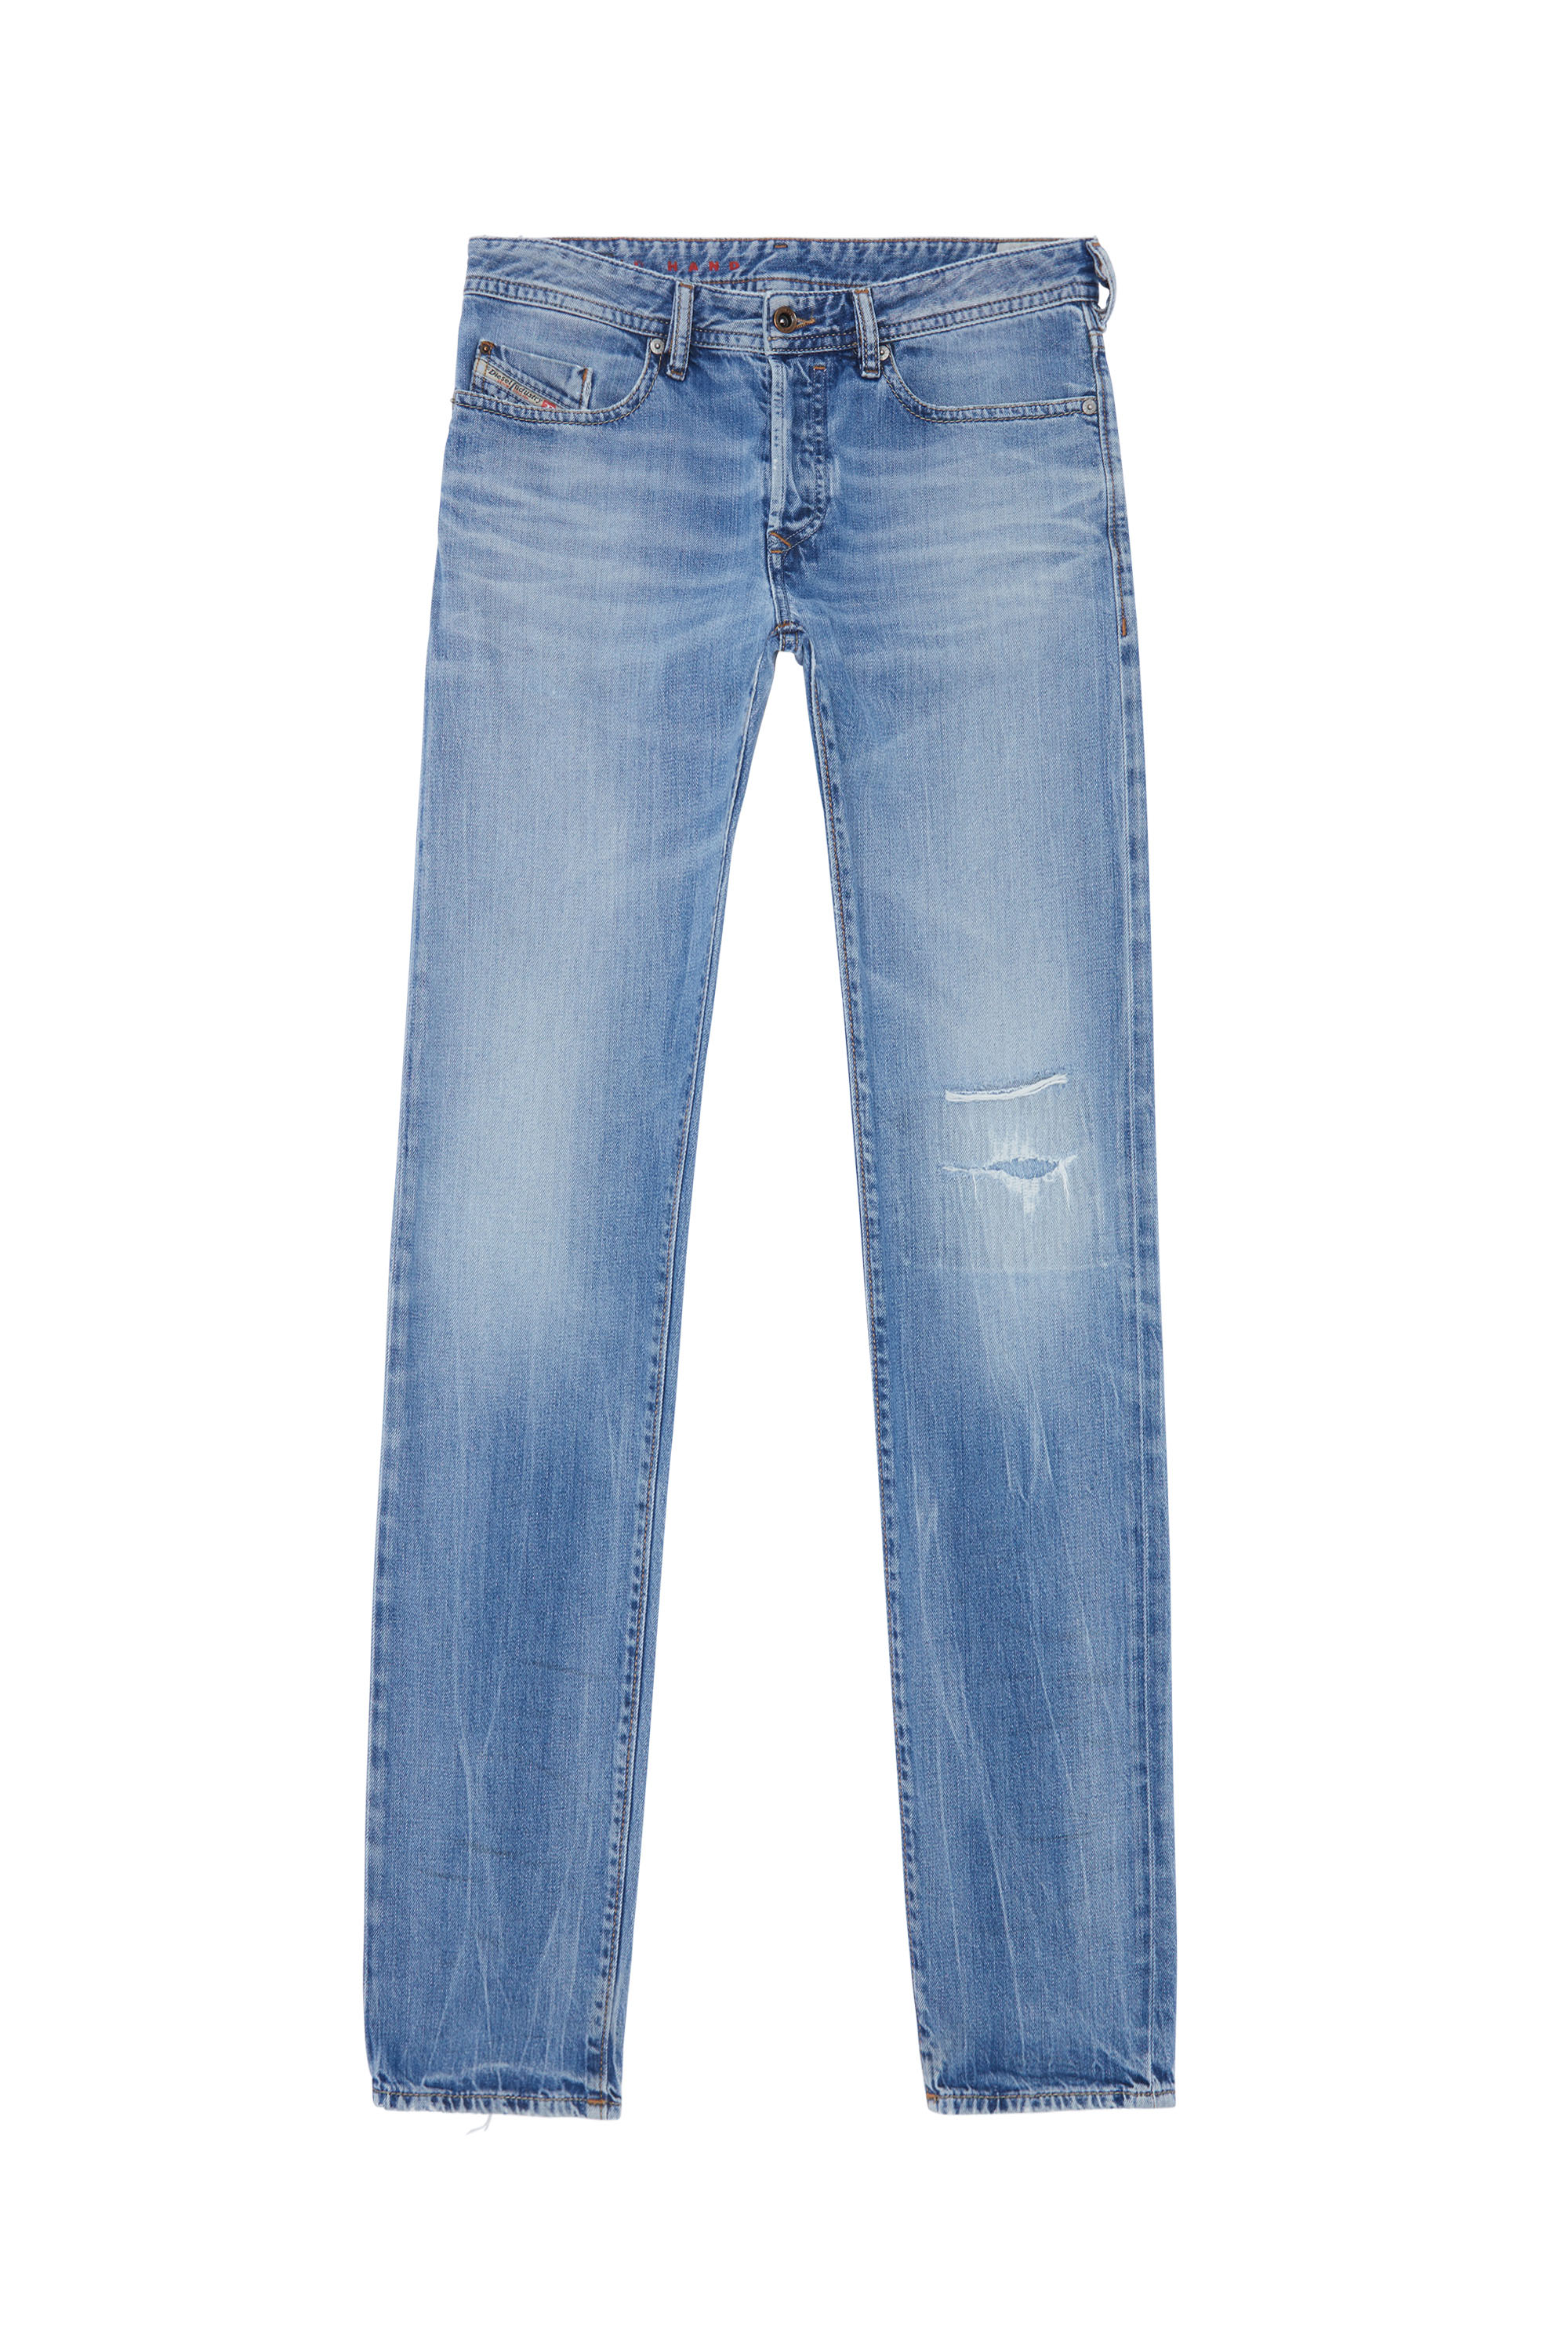 BUSTER, Hellblau - Jeans